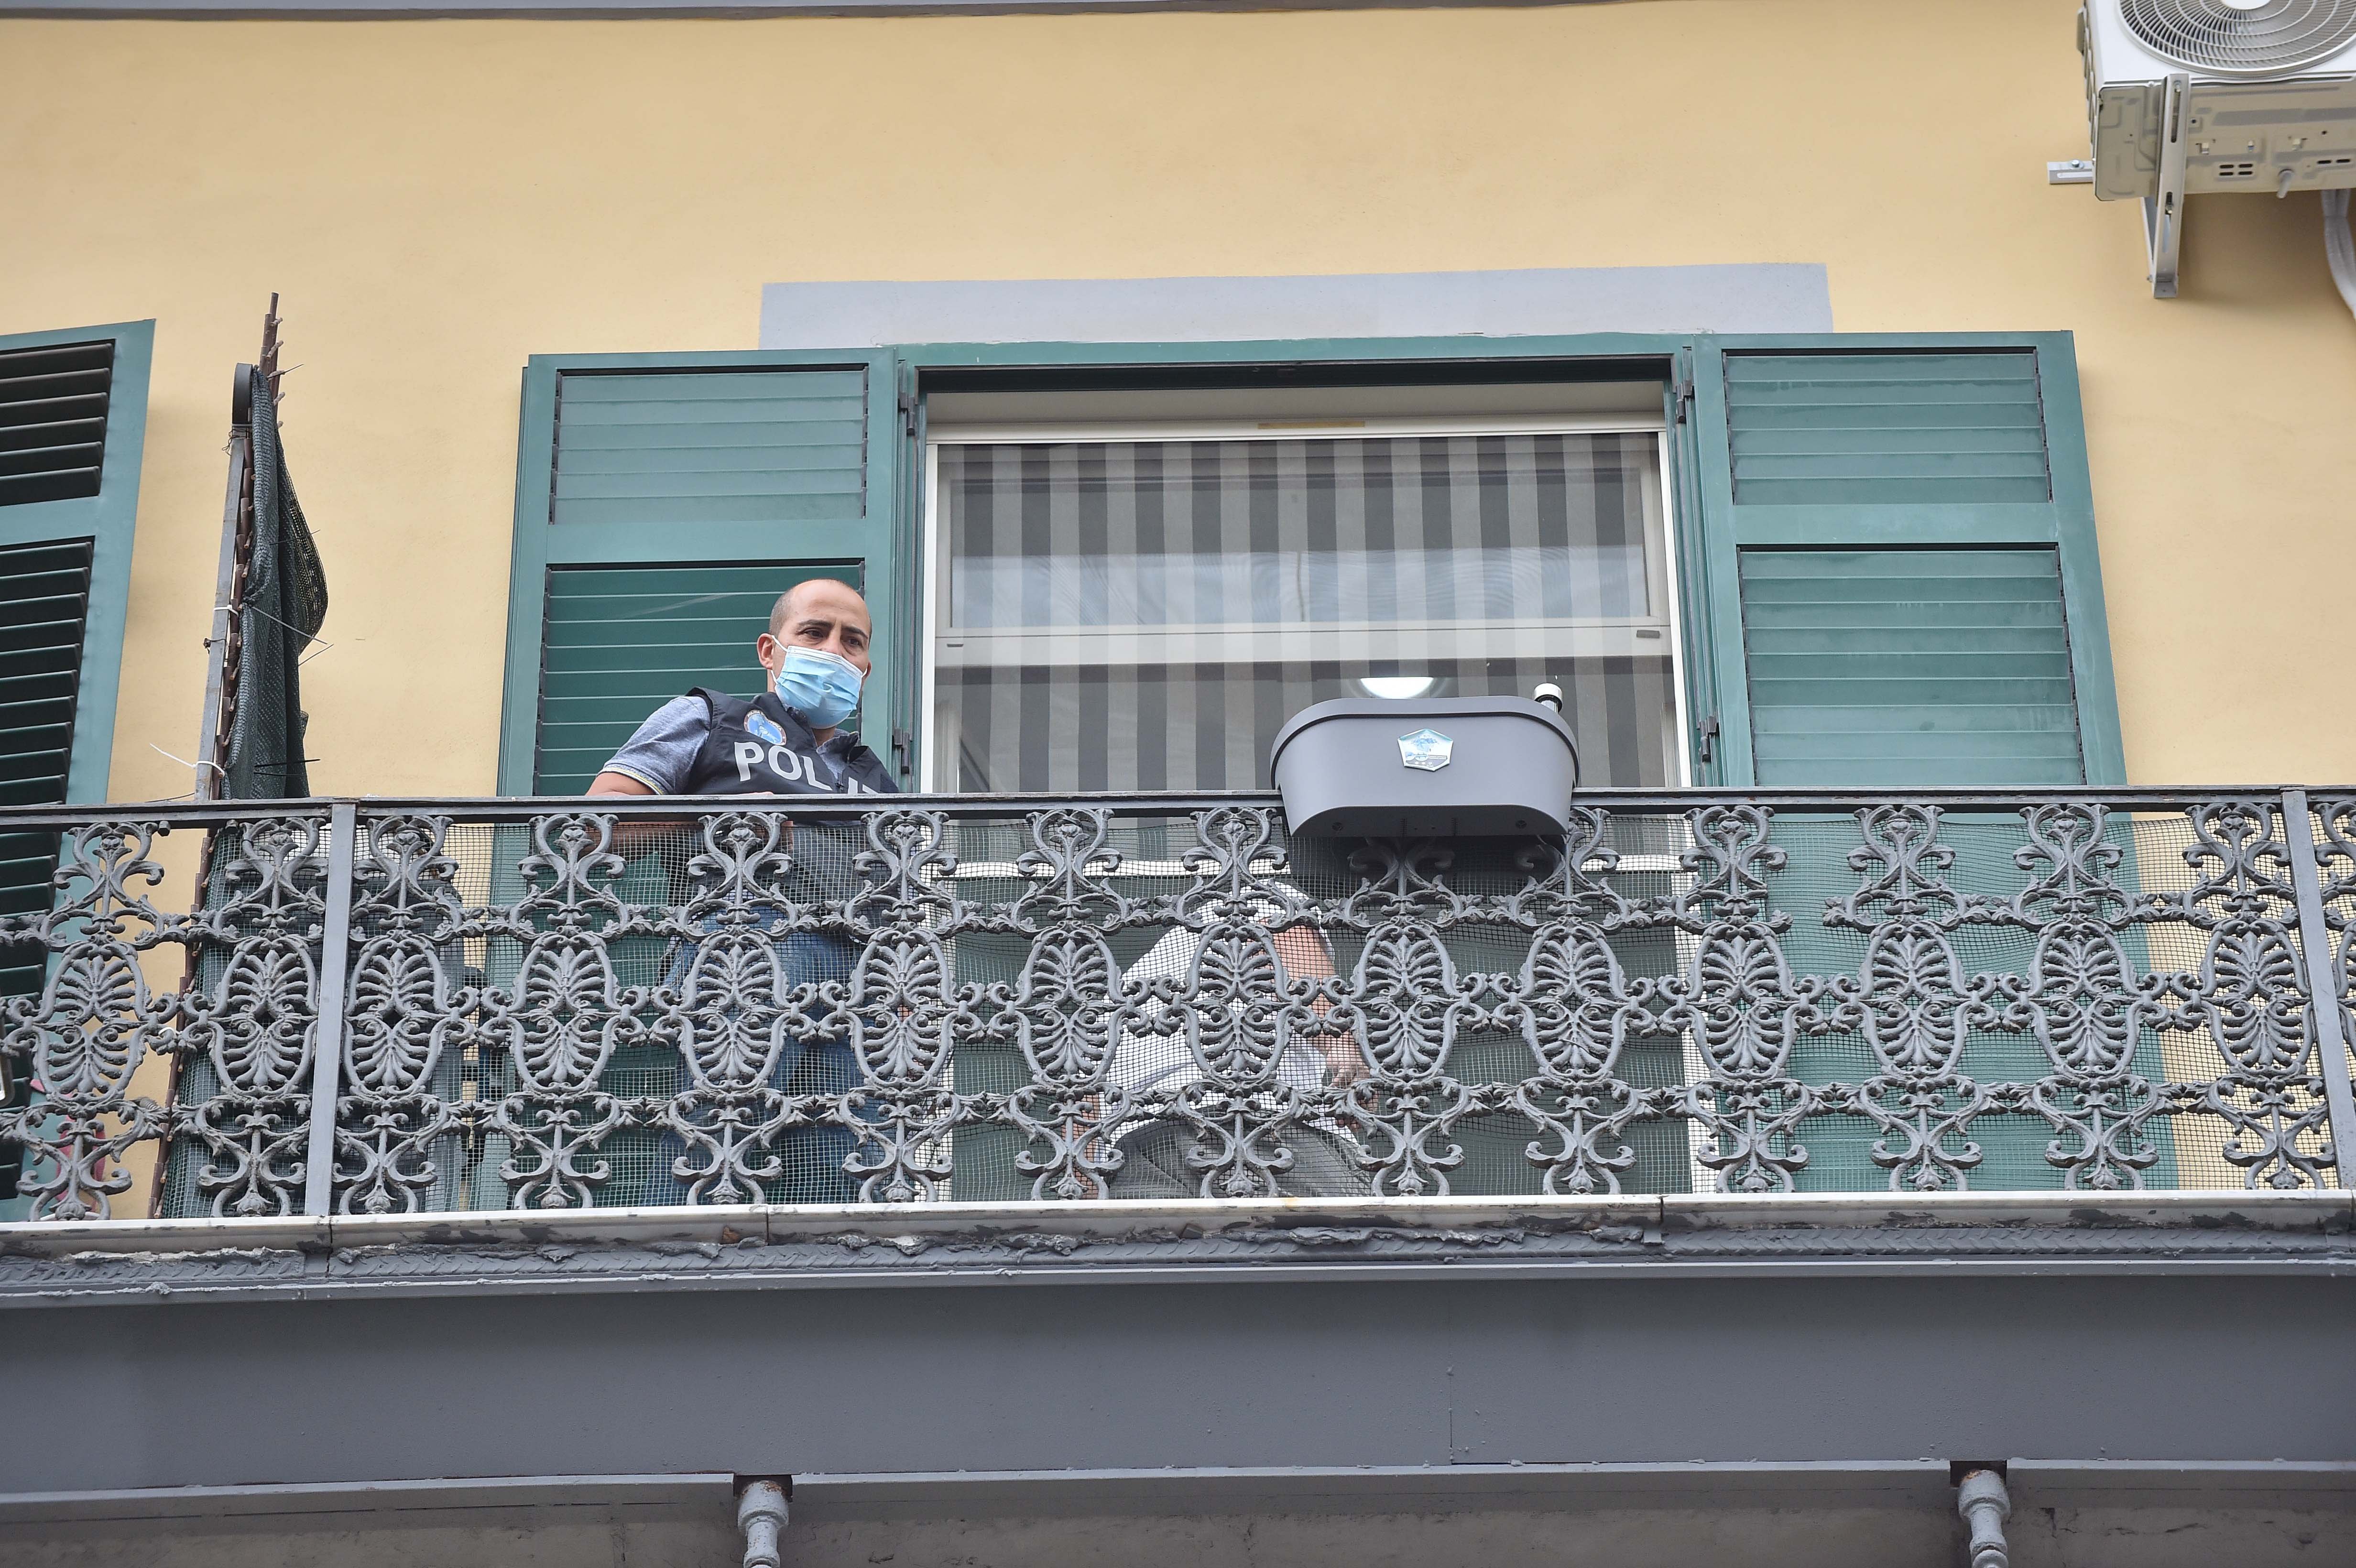 Mariano Cannio bimbo morto caduto napoli balcone via foria